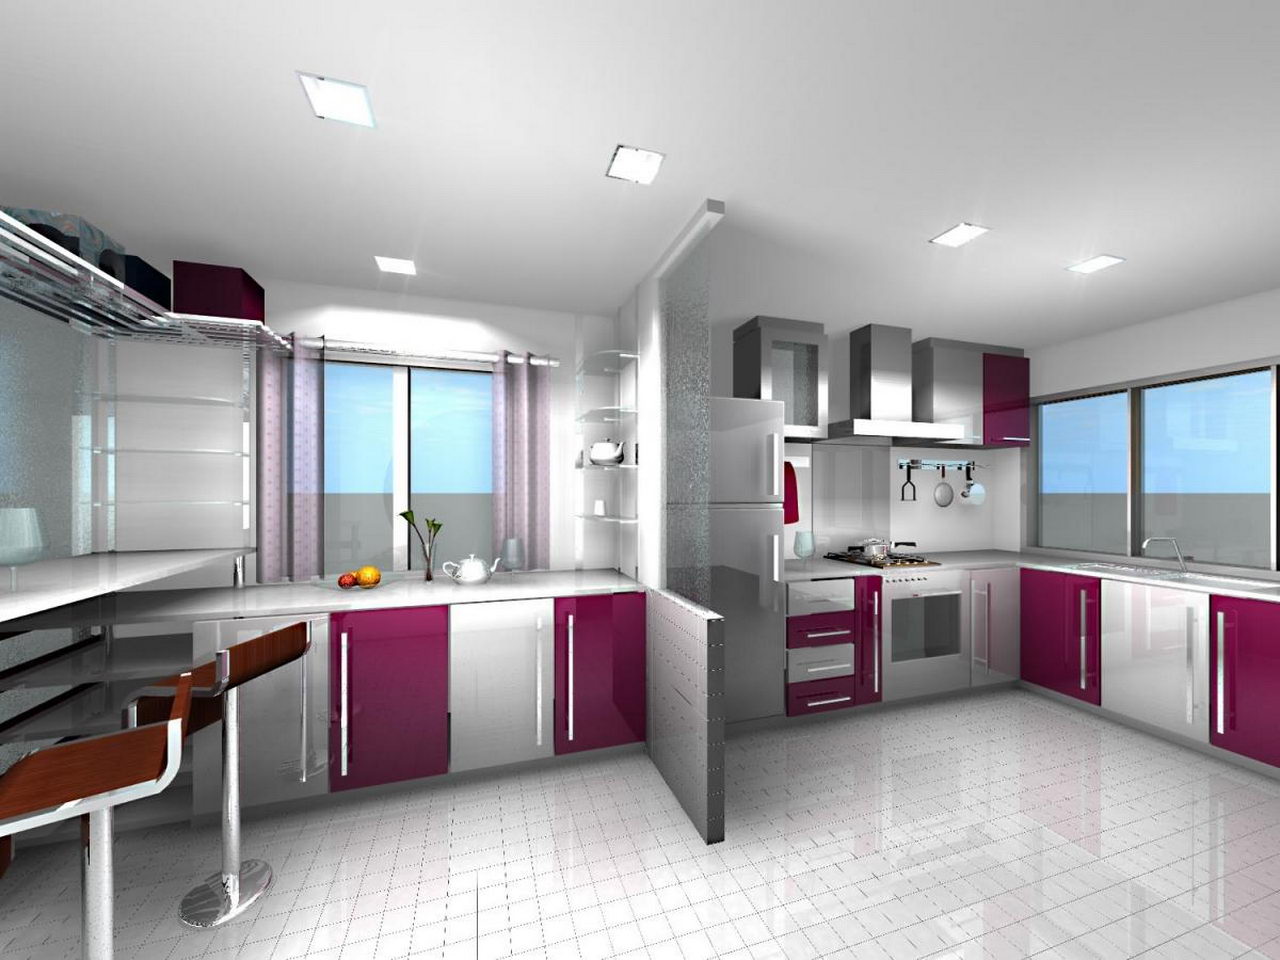 ikea kitchen design ideas